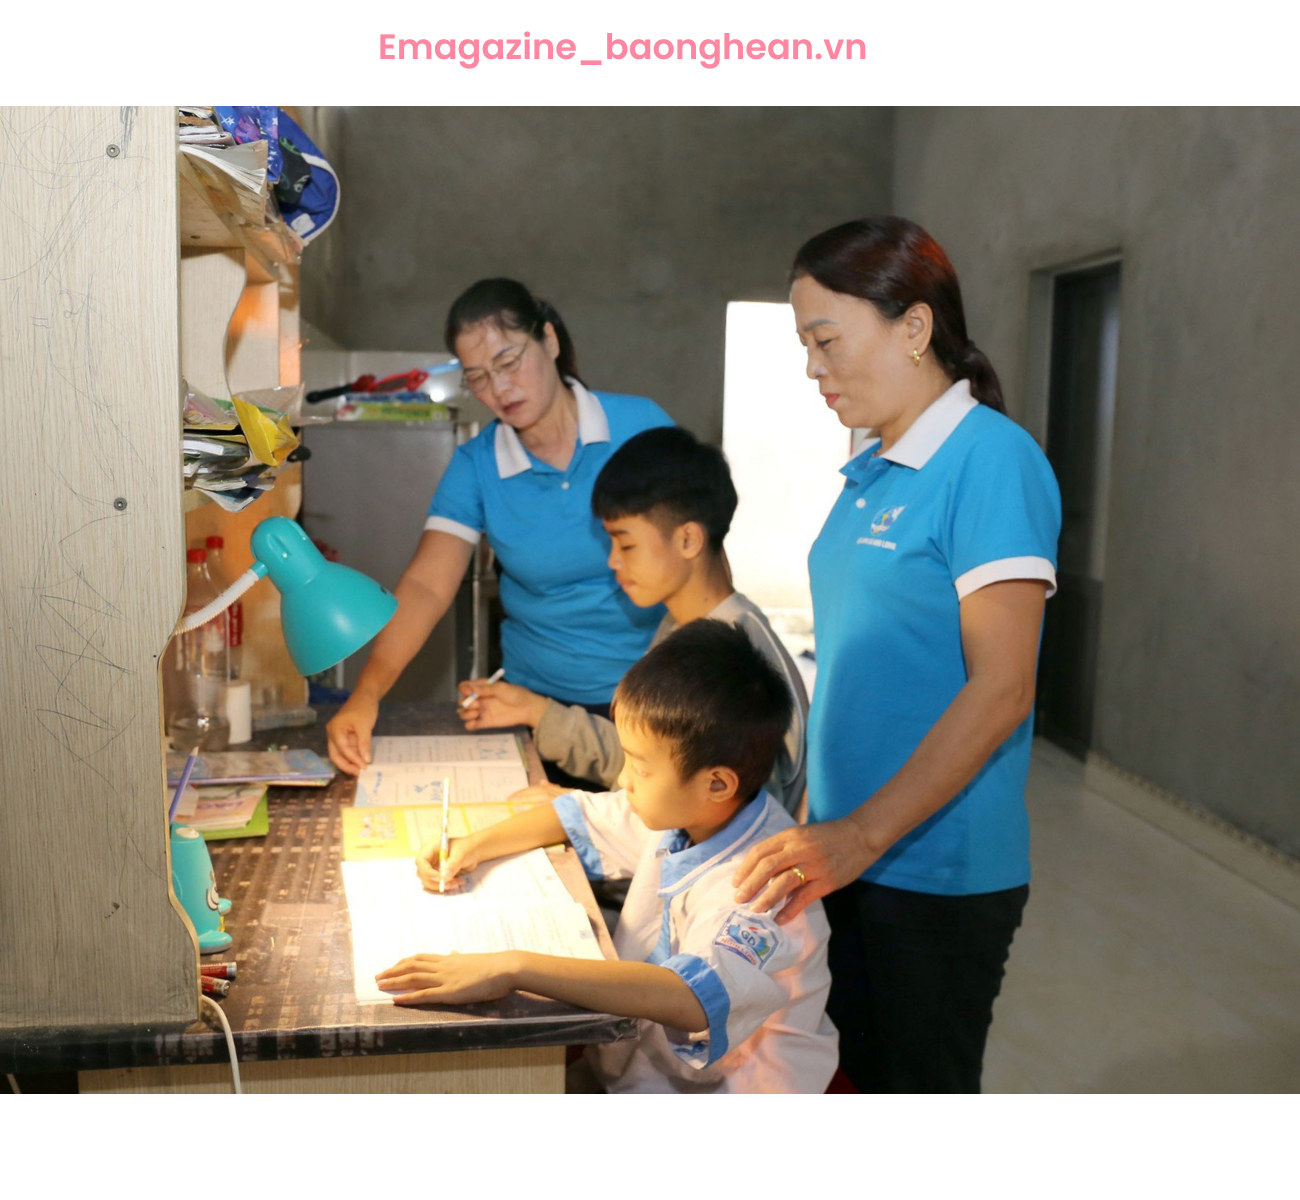 Nguyễn Đình Hậu cùng với anh trai luôn nhận được sự quan tâm, giúp đỡ của những người “Mẹ đỡ đầu” tại huyện Nghi Lộc.